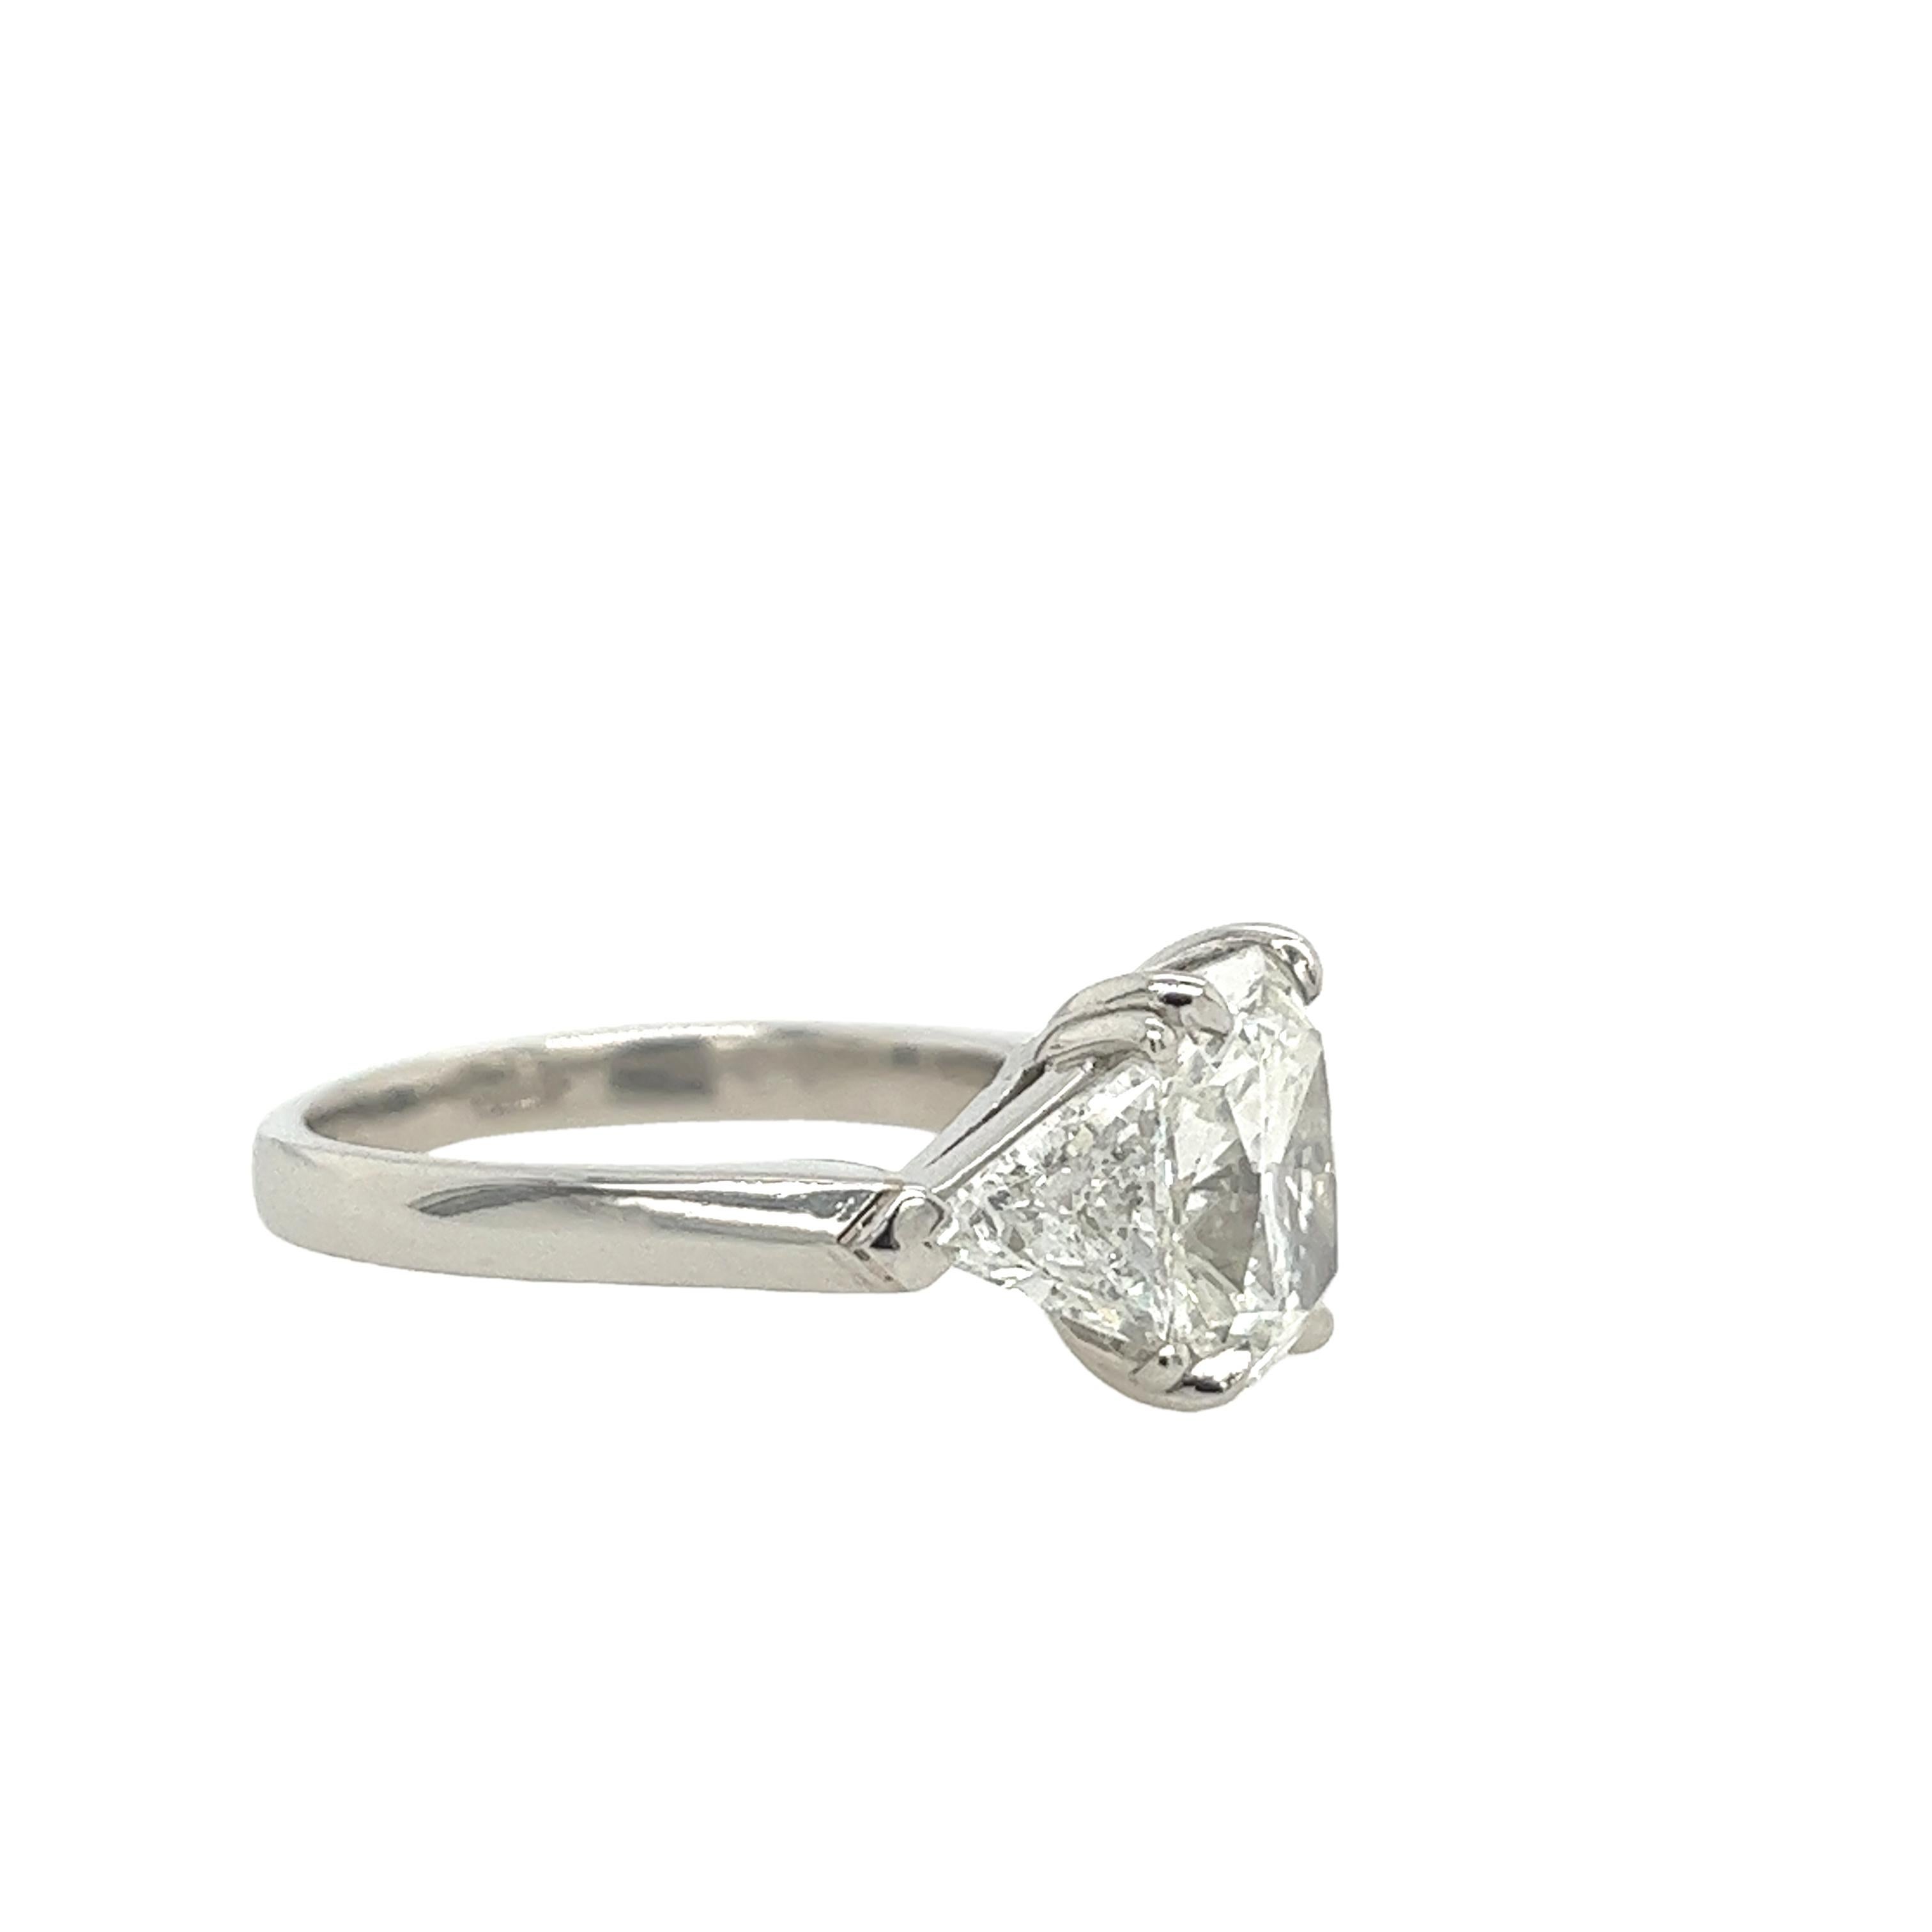 Platinum 2.03ct E/VVS2 Square Modified Diamond Ring & 1.60ct Triangle Diamonds In Excellent Condition For Sale In London, GB